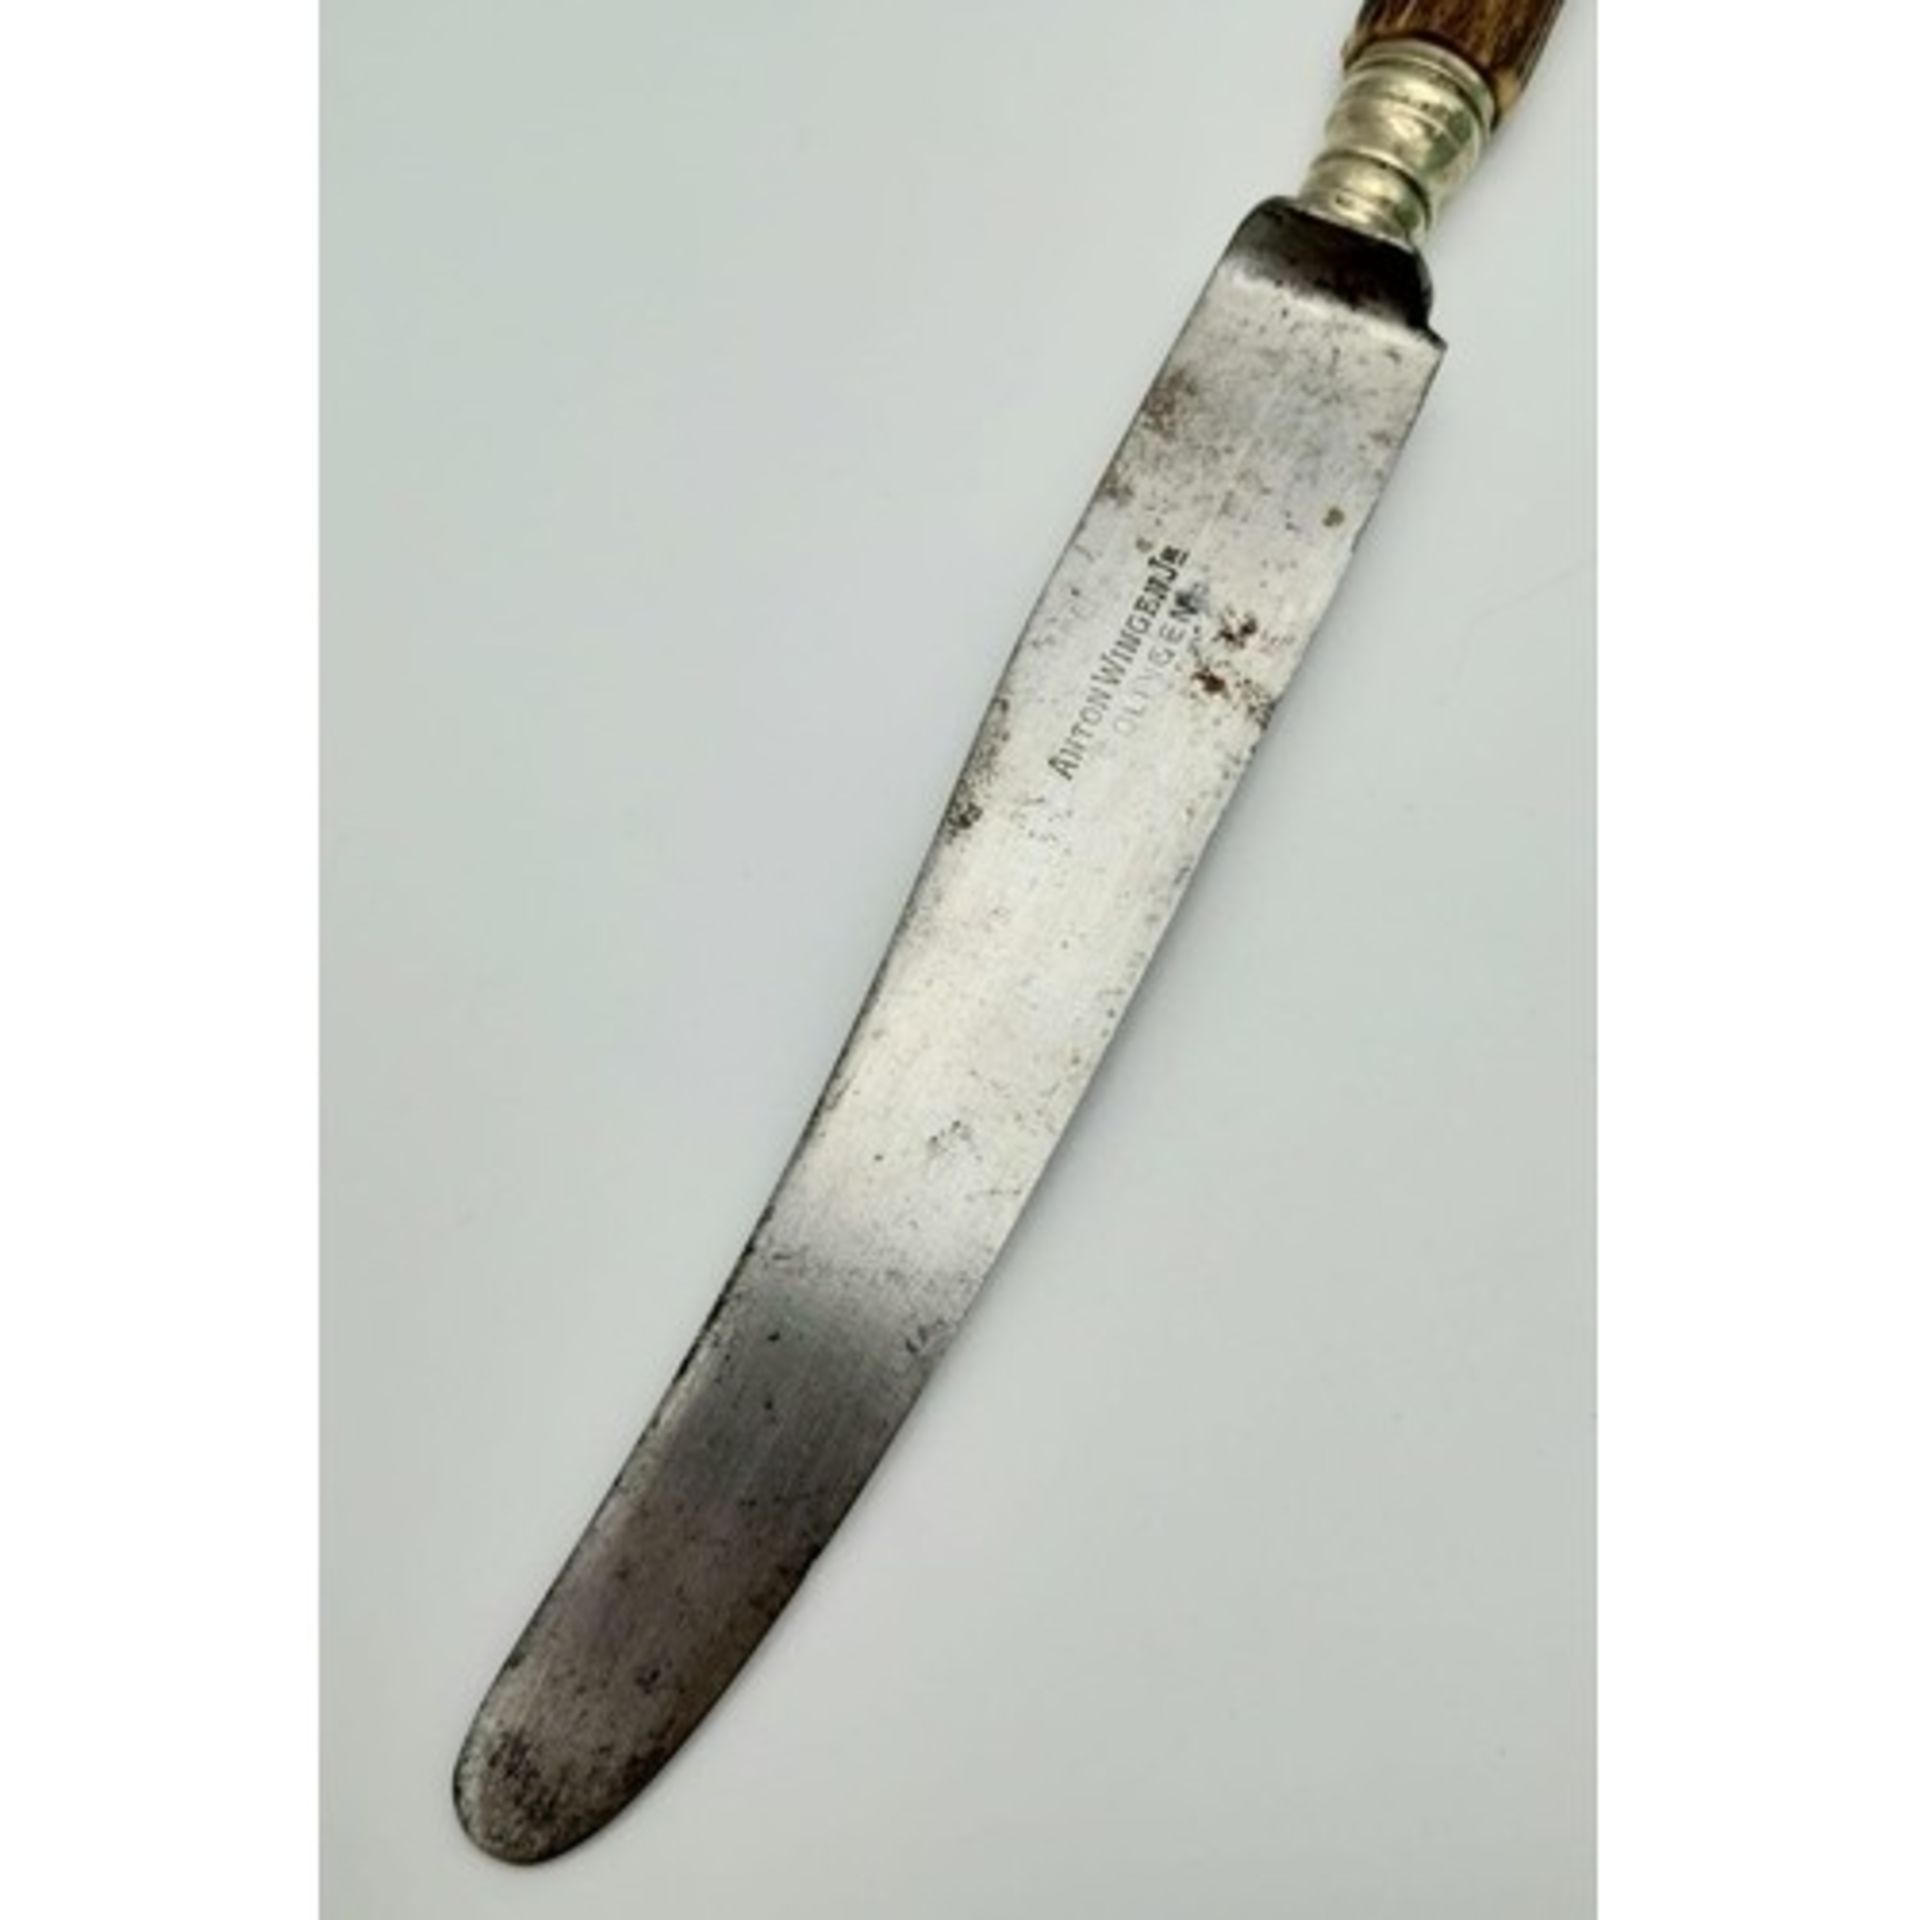 3rd Reich Hunting Association Antler handled knife with hand engraved logo. Maker Anton Wingen Jr. - Image 4 of 6